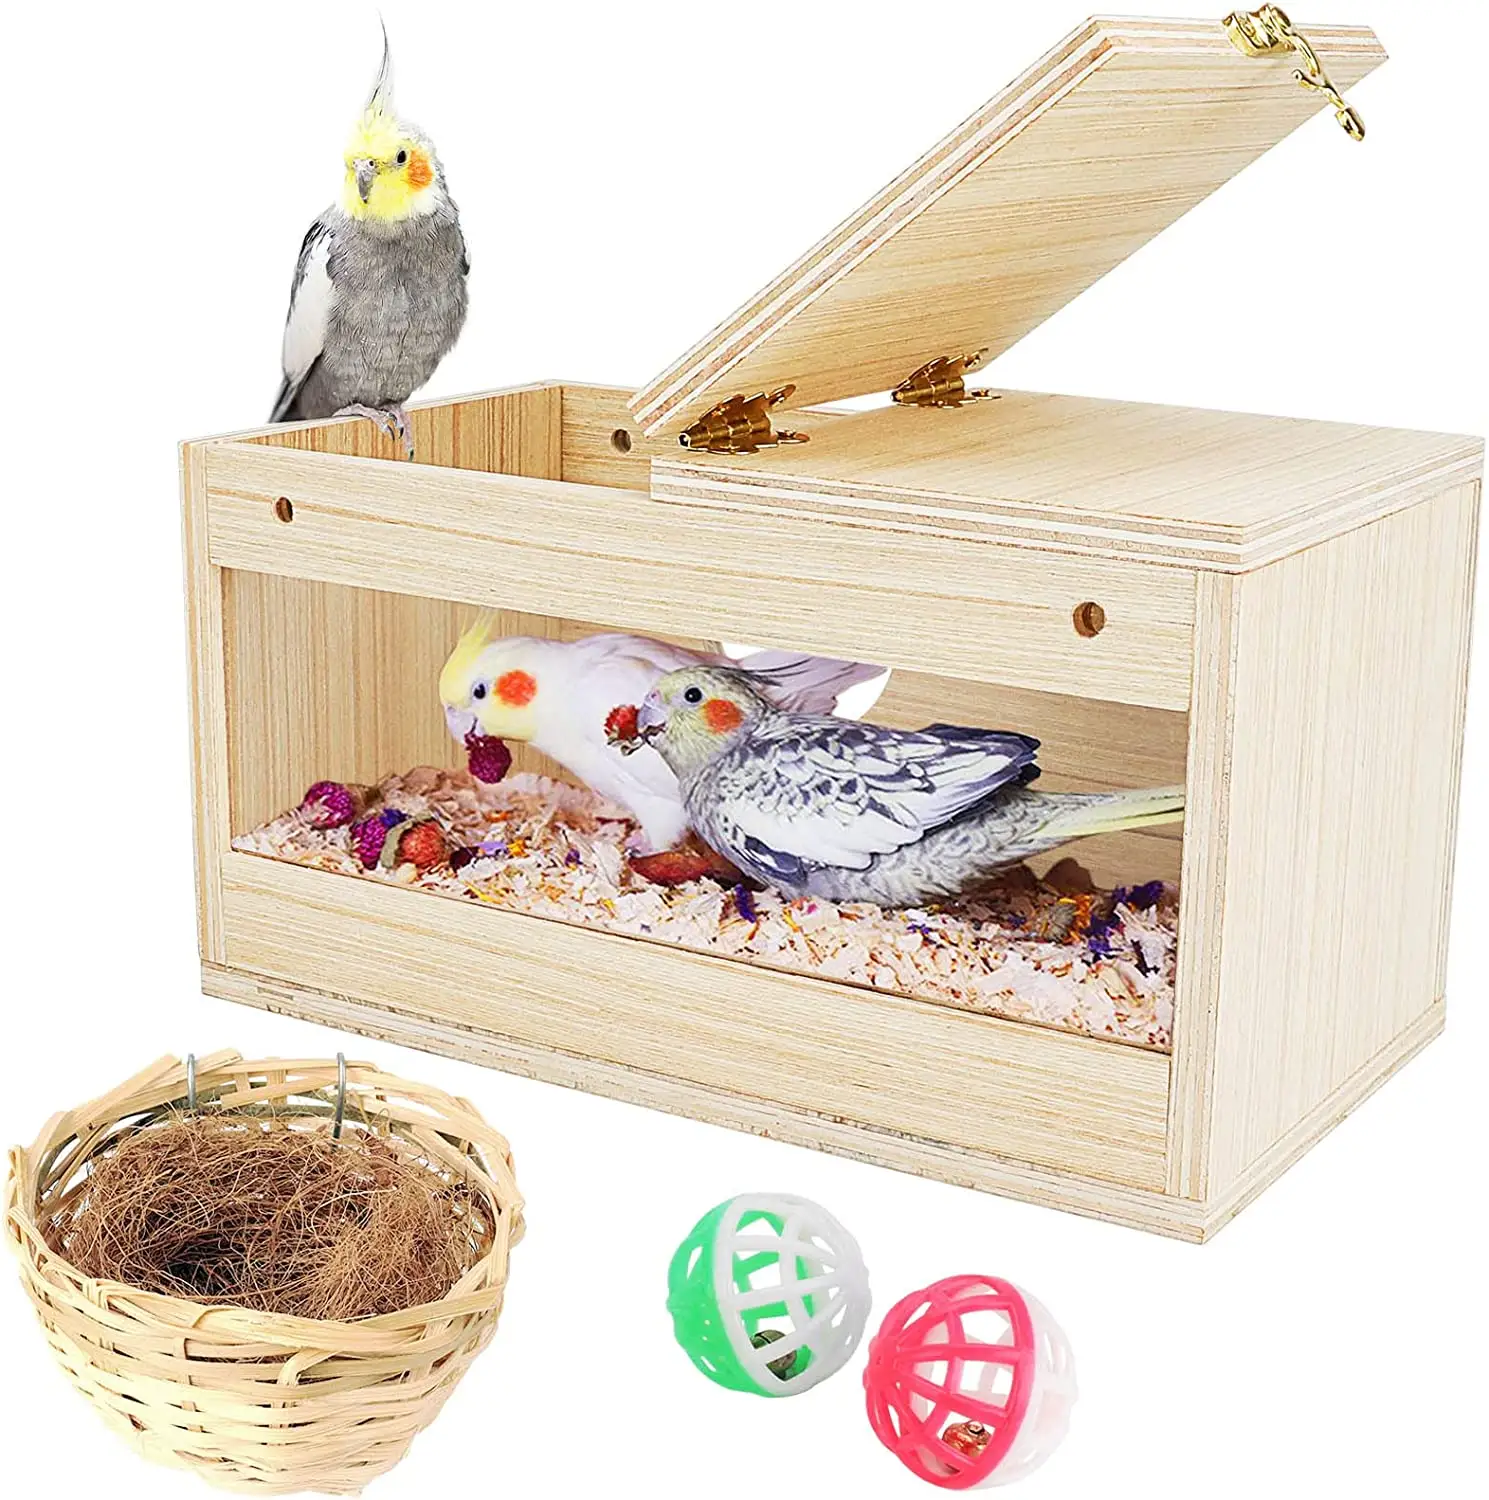 Ящик для гнездования попугаев, прозрачный ящик для гнездования, деревянный домик для птиц, наборы для гнезда для птиц с бамбуком